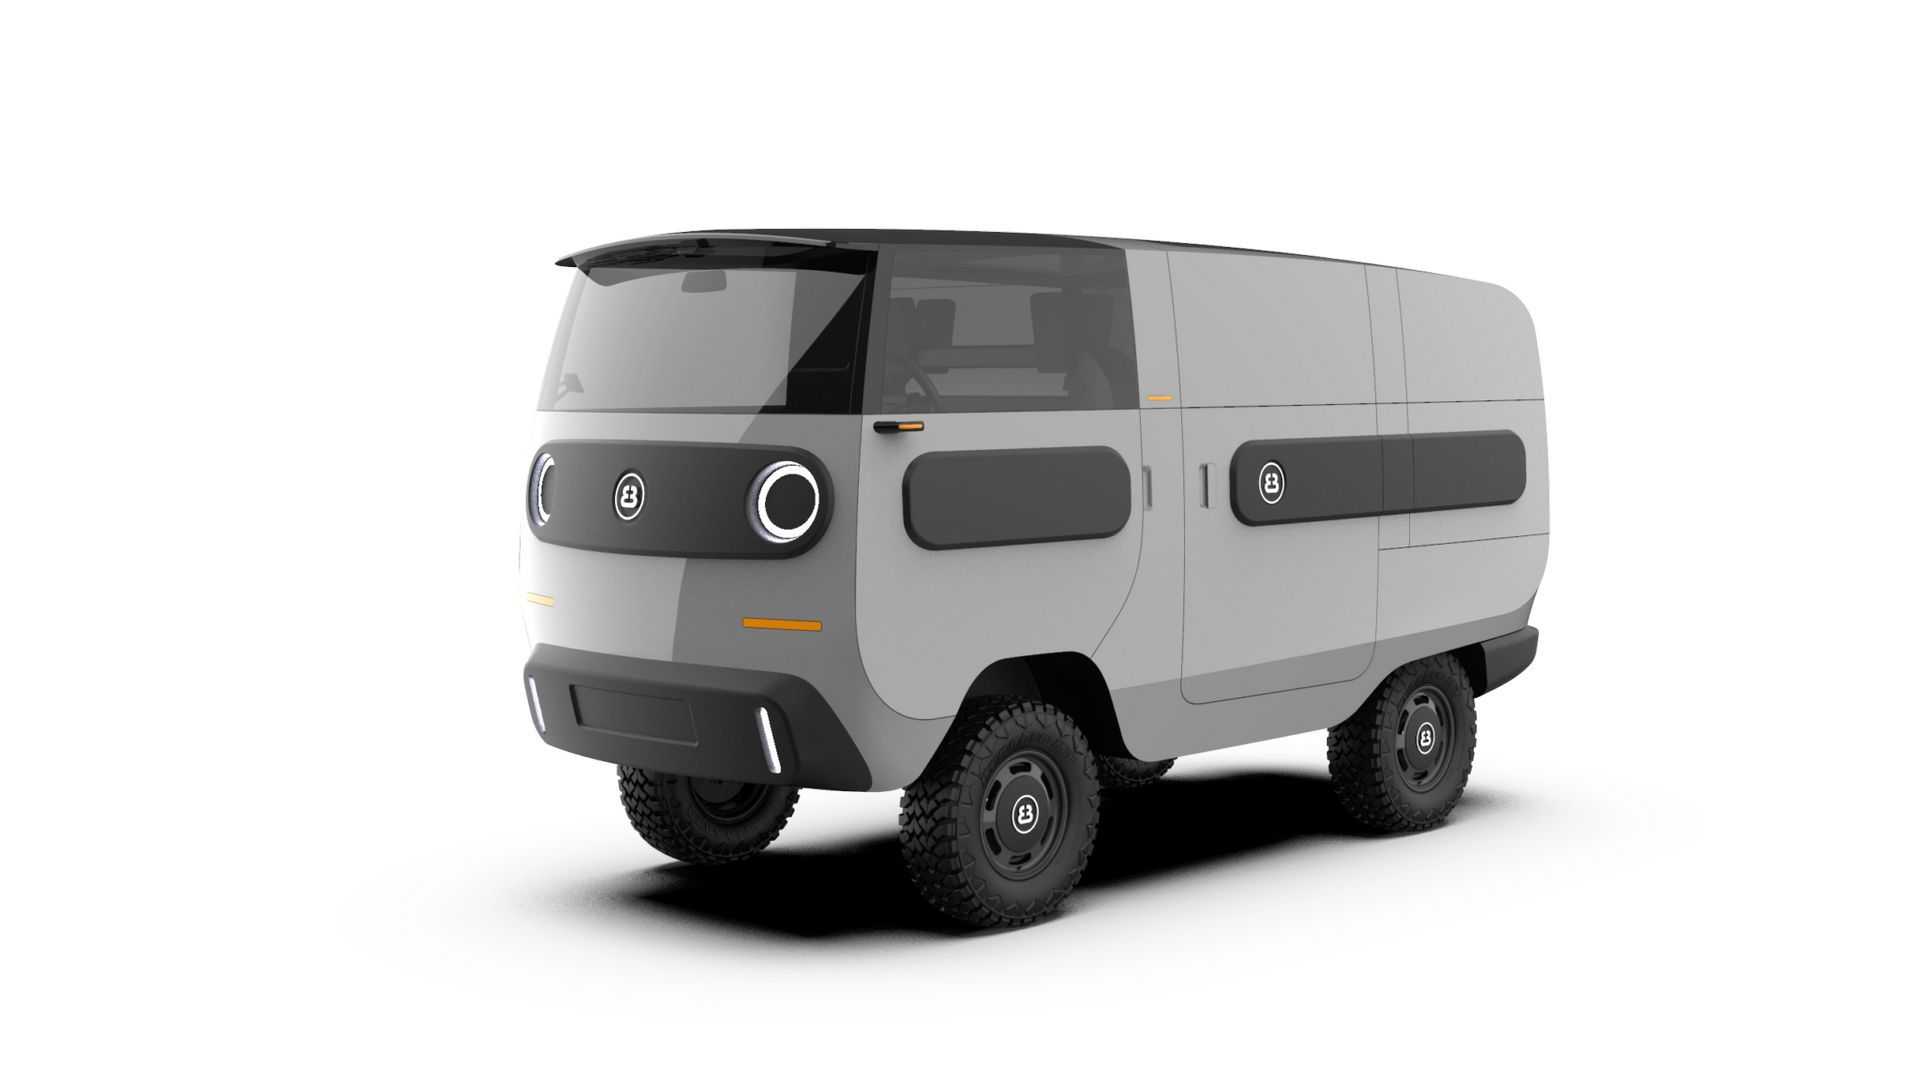 La eBussy es una adorable furgoneta eléctrica con hasta 600 km de autonomía, ¡y desde 15.800€! thumbnail